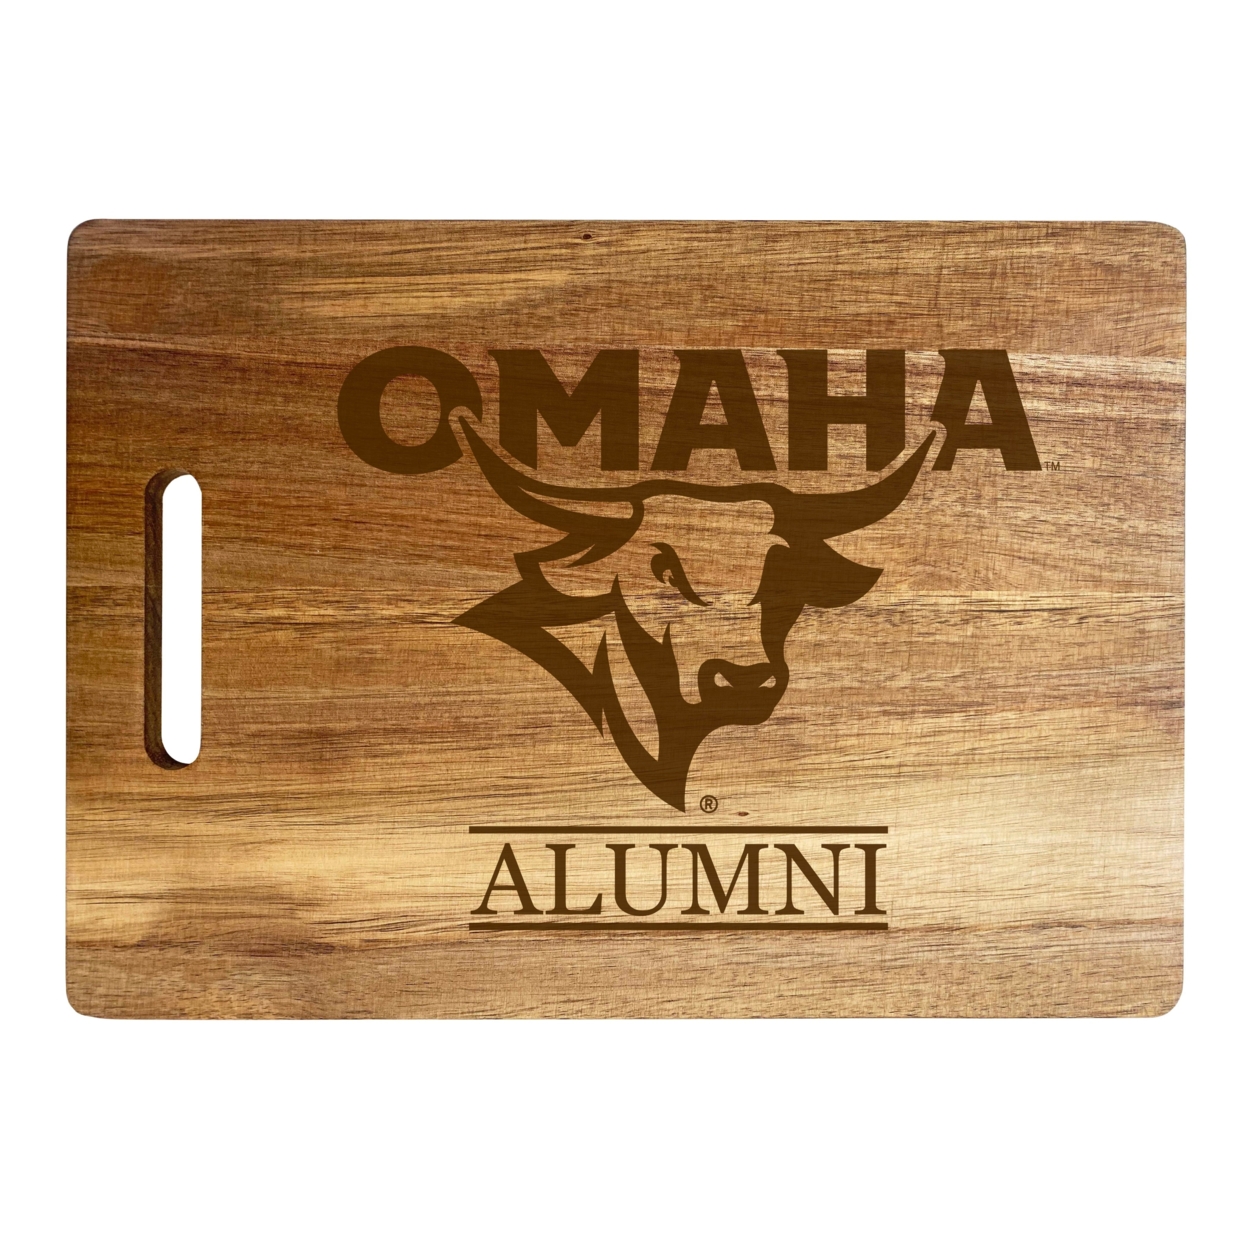 Nebraska At Omaha Alumni Engraved Wooden Cutting Board 10 X 14 Acacia Wood